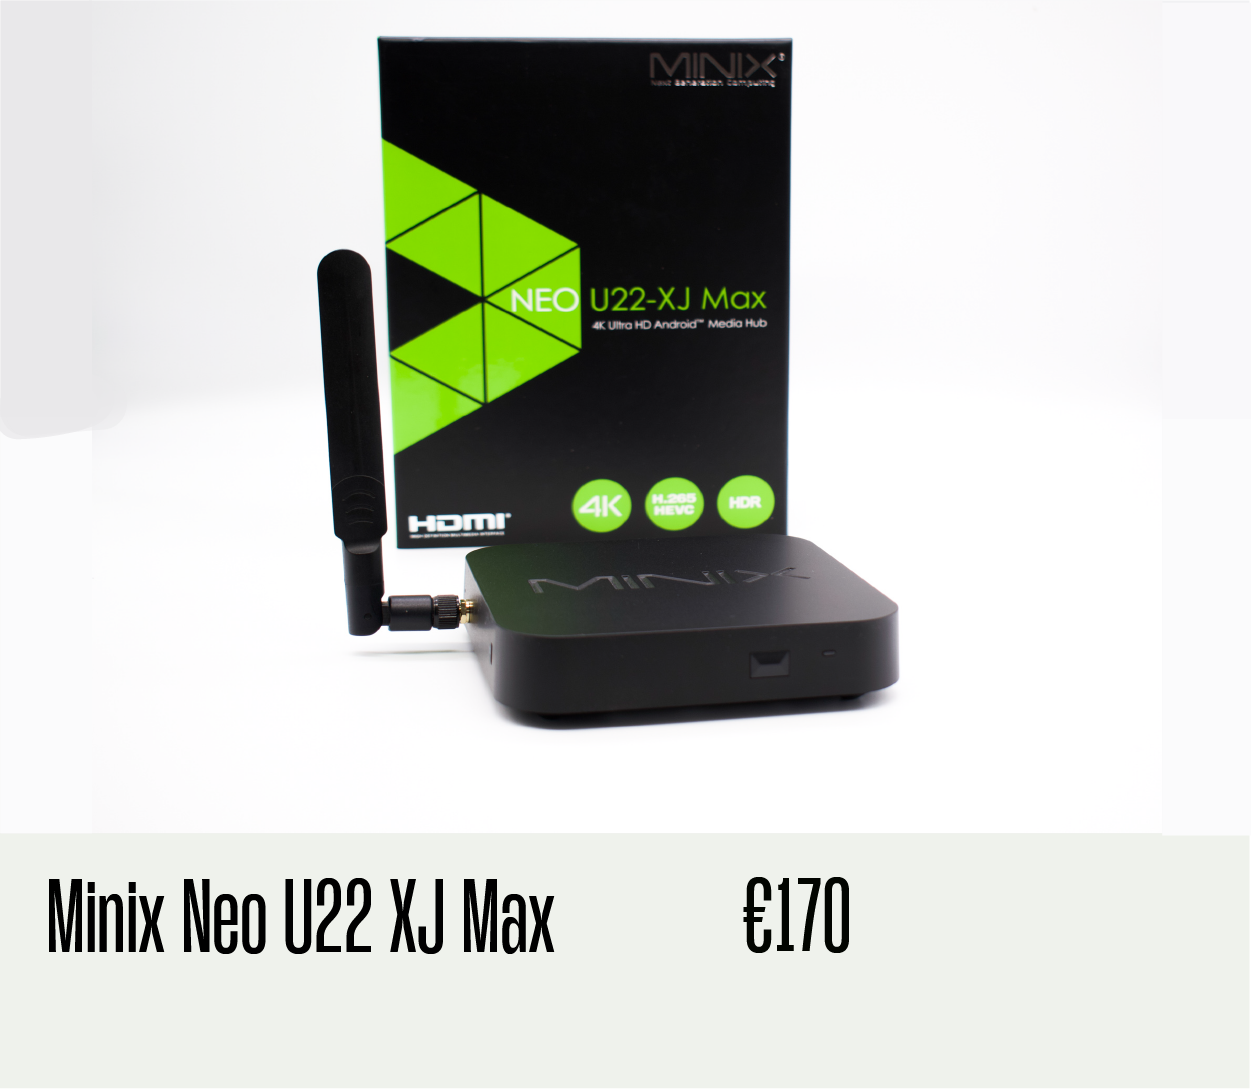 Minix U22 XJ Max